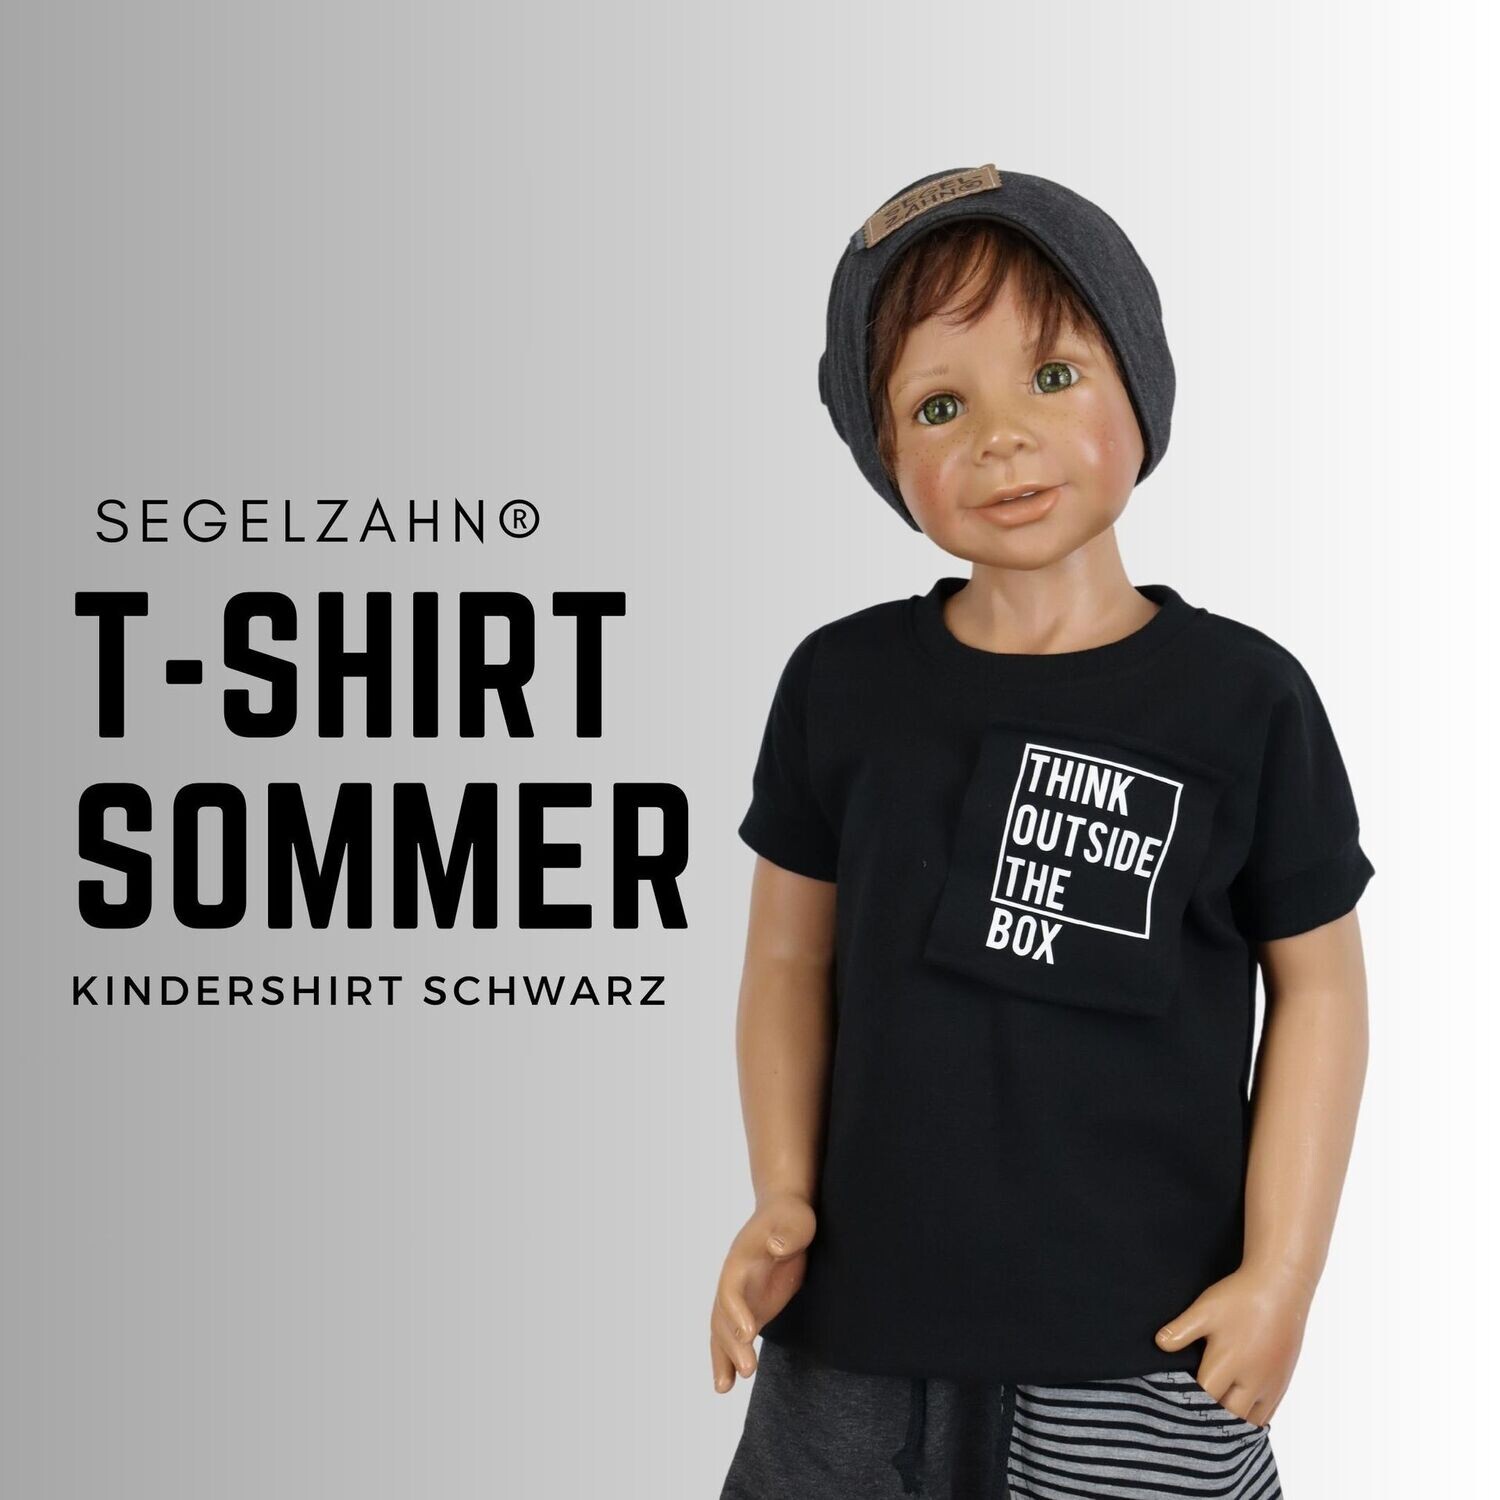 Tshirt Unisex Schwarz - statement Shirt für Jungen und Mädchen - Segelzahn think outside the box- Kindershirt - Oberteile - Sommer für Kind und Baby